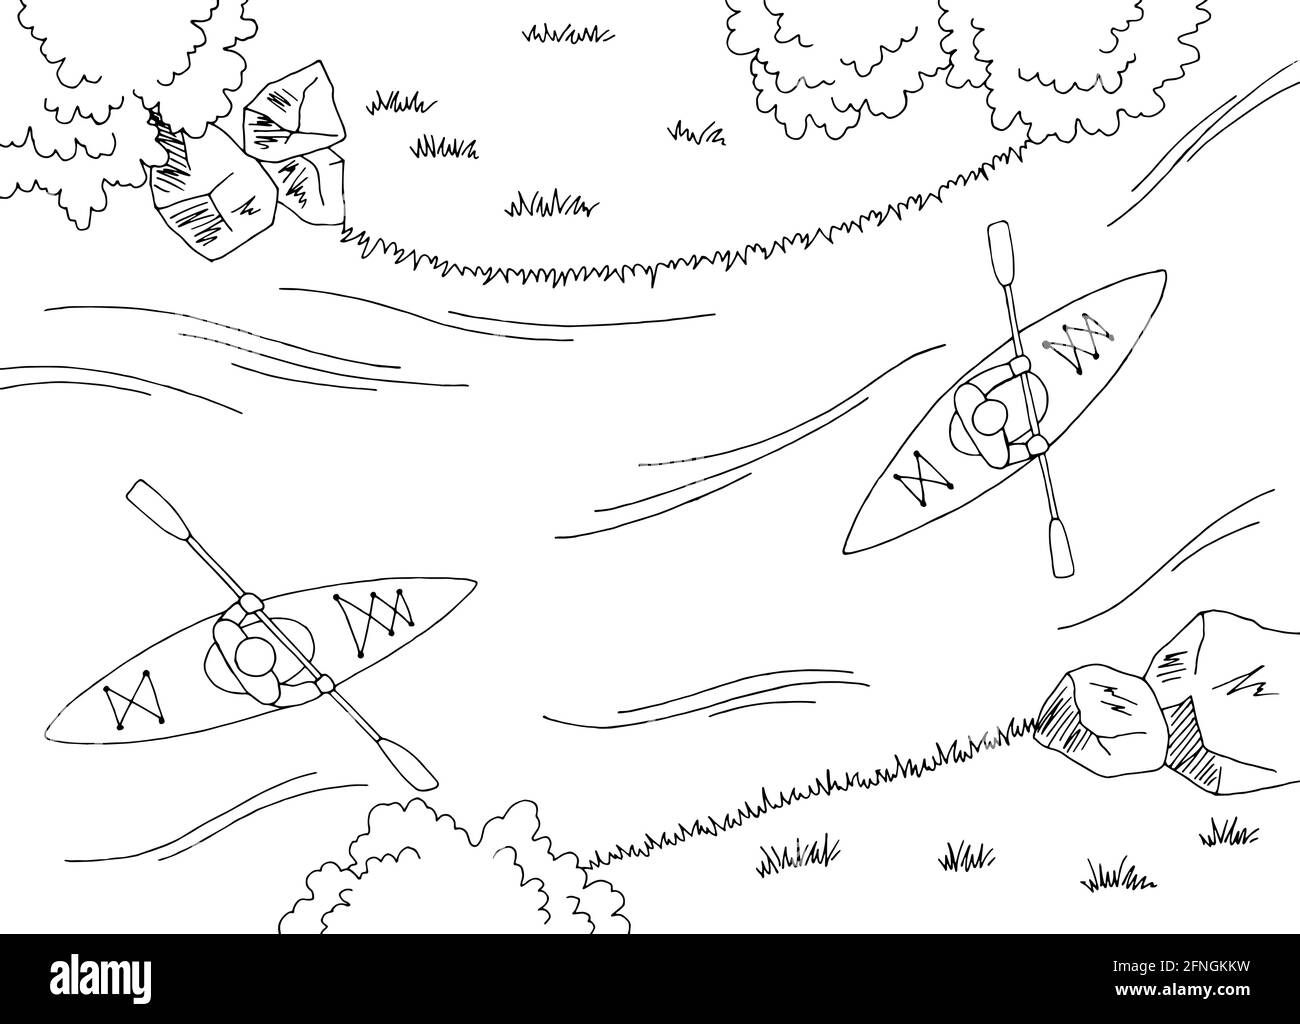 Kayak bateau voyage graphique noir blanc rivière vue aérienne du dessus vecteur d'illustration d'esquisse paysage Illustration de Vecteur